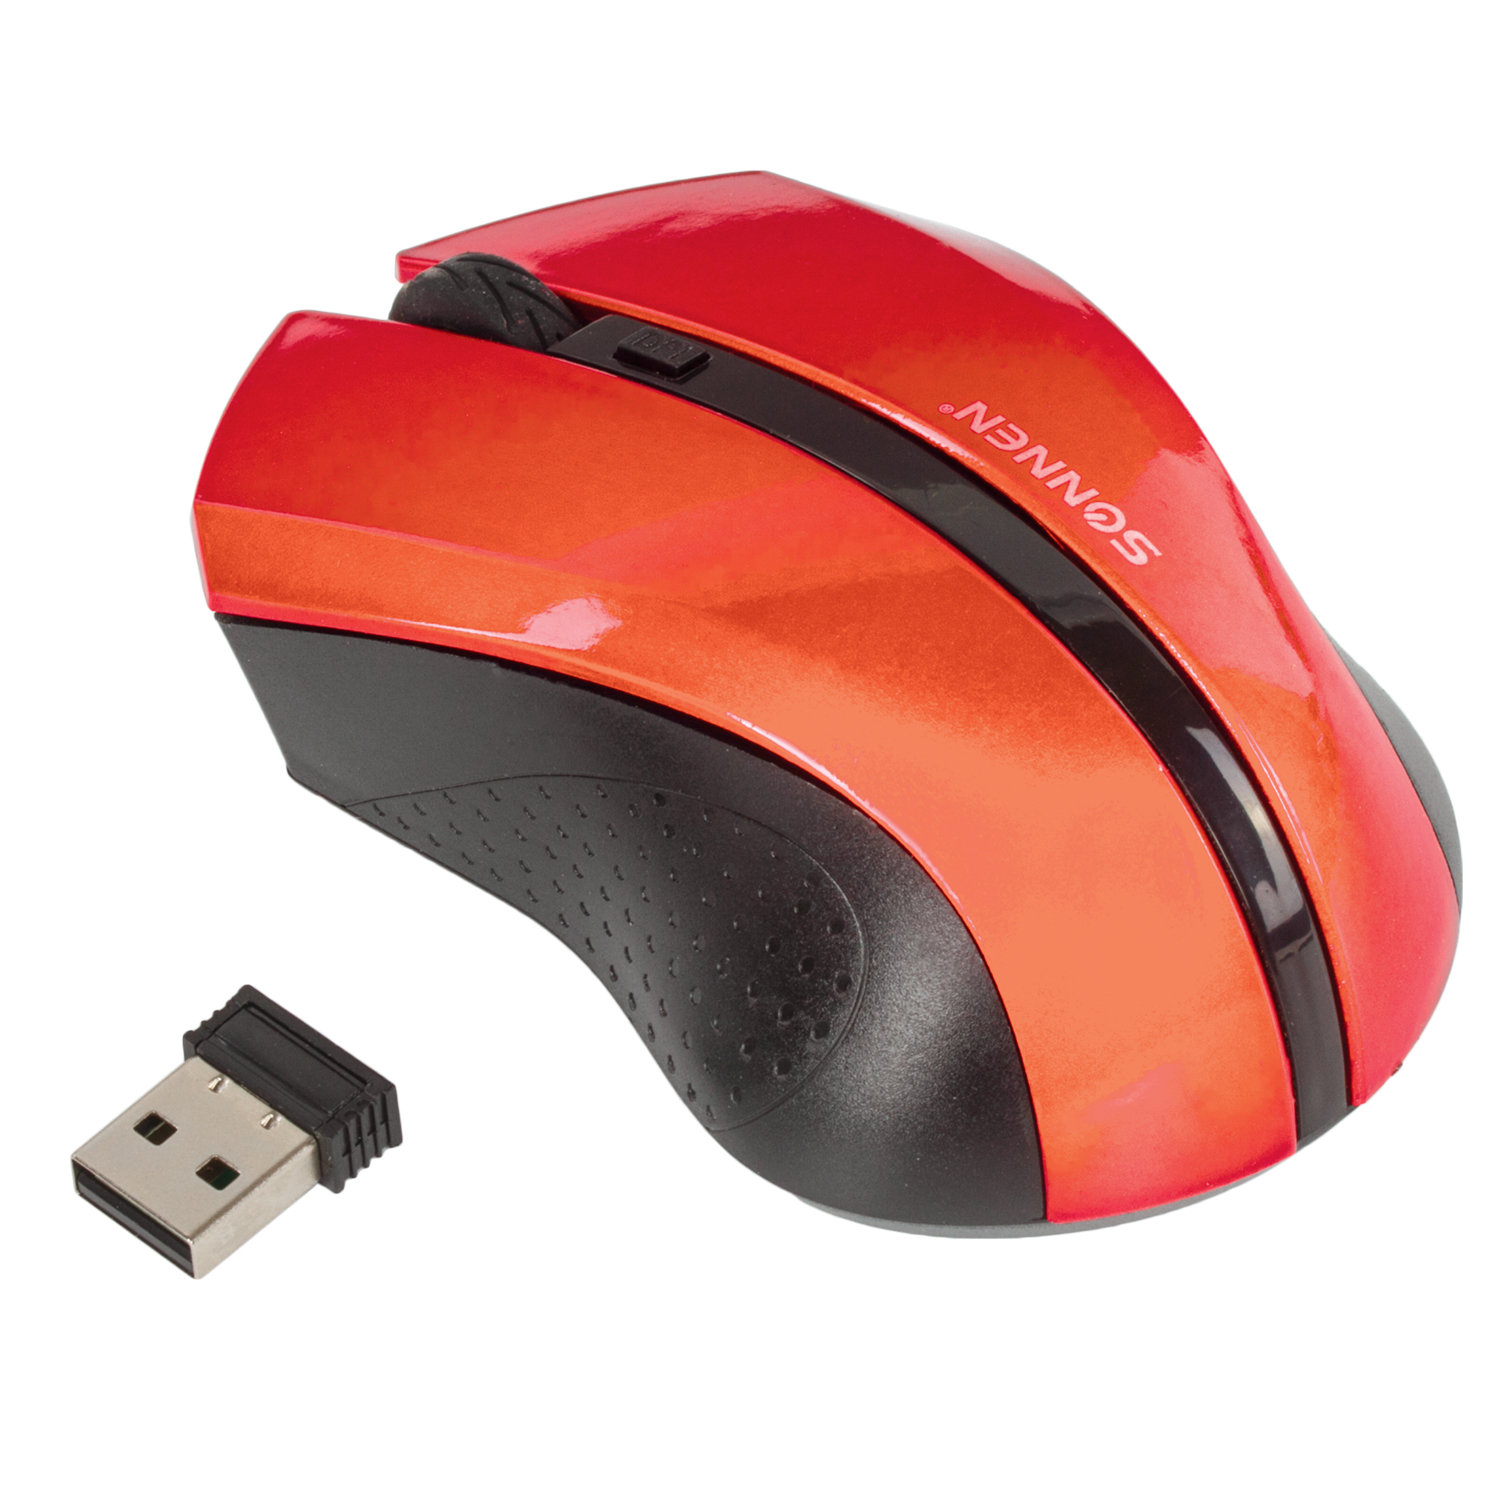 Мышь беспроводная SONNEN WM-250R, USB, 1600 dpi, 3 кнопки + 1 колесо-кнопка, оптическая, красная, 512643 купите по выгодной цене